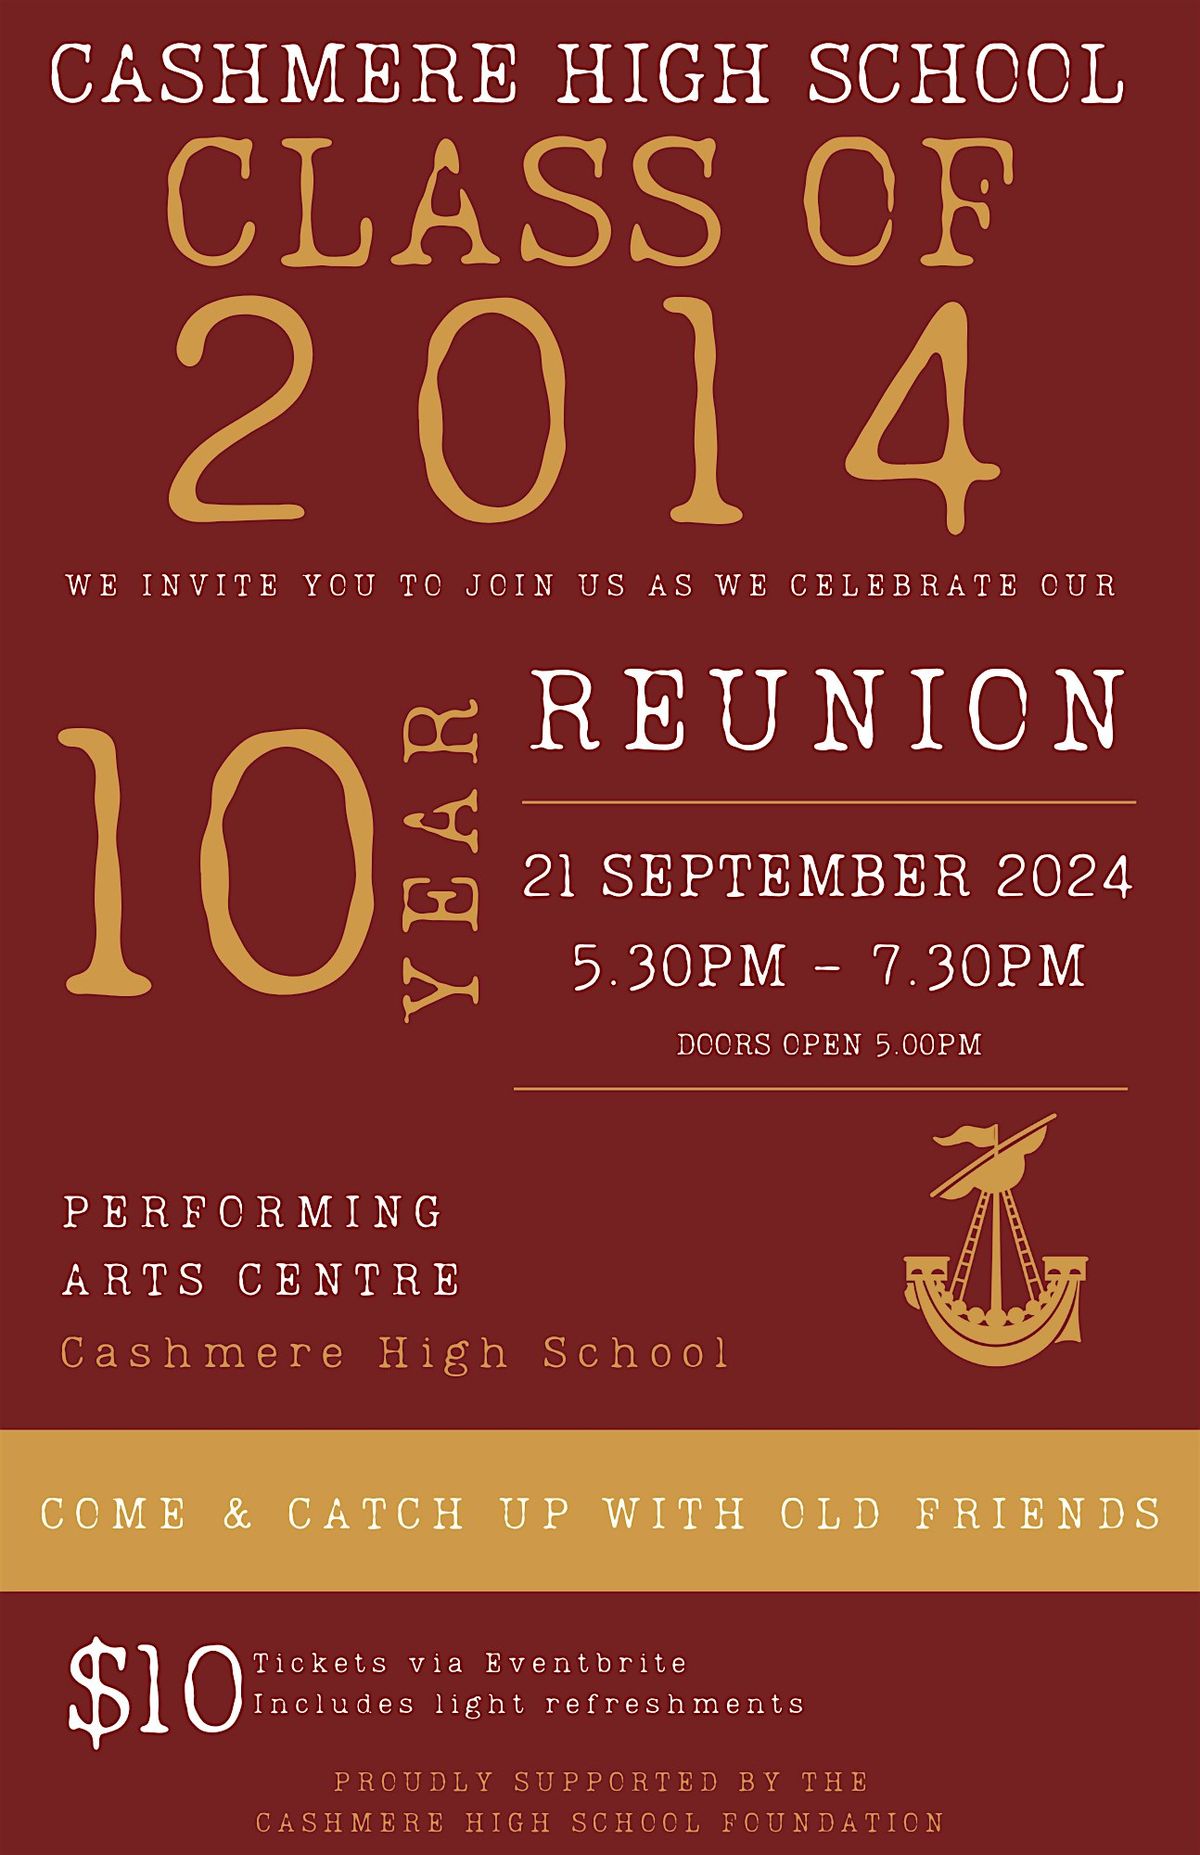 CHS Class of 2014 Reunion